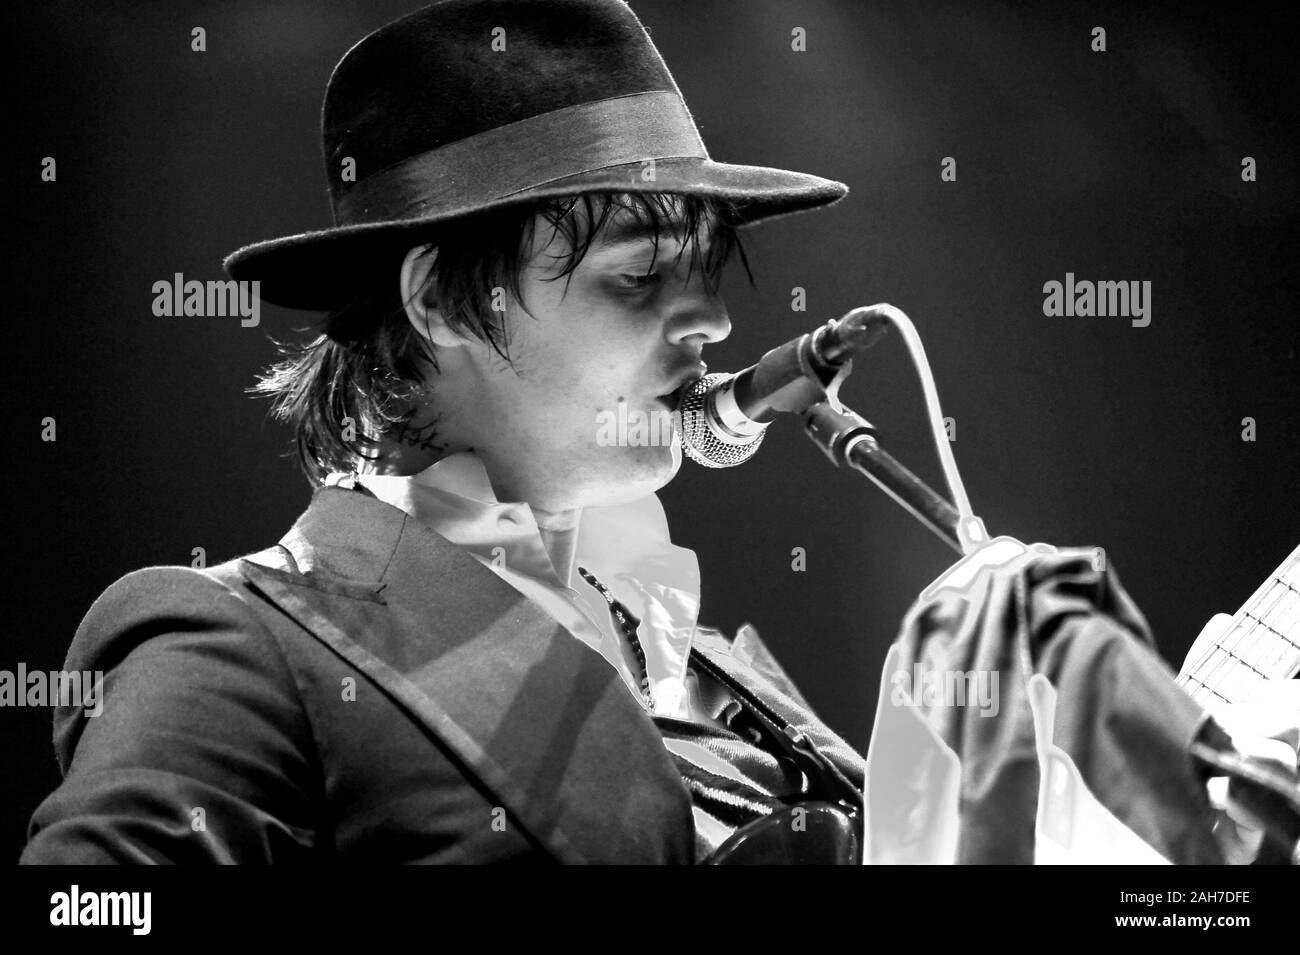 Italien Mailand, 14. Juni 2009,Musikfestival'Rock in Idro'at the Idroscalo:der Sänger und Gitarrist der Gruppe Babyshambles, Pete Doherty. Stockfoto